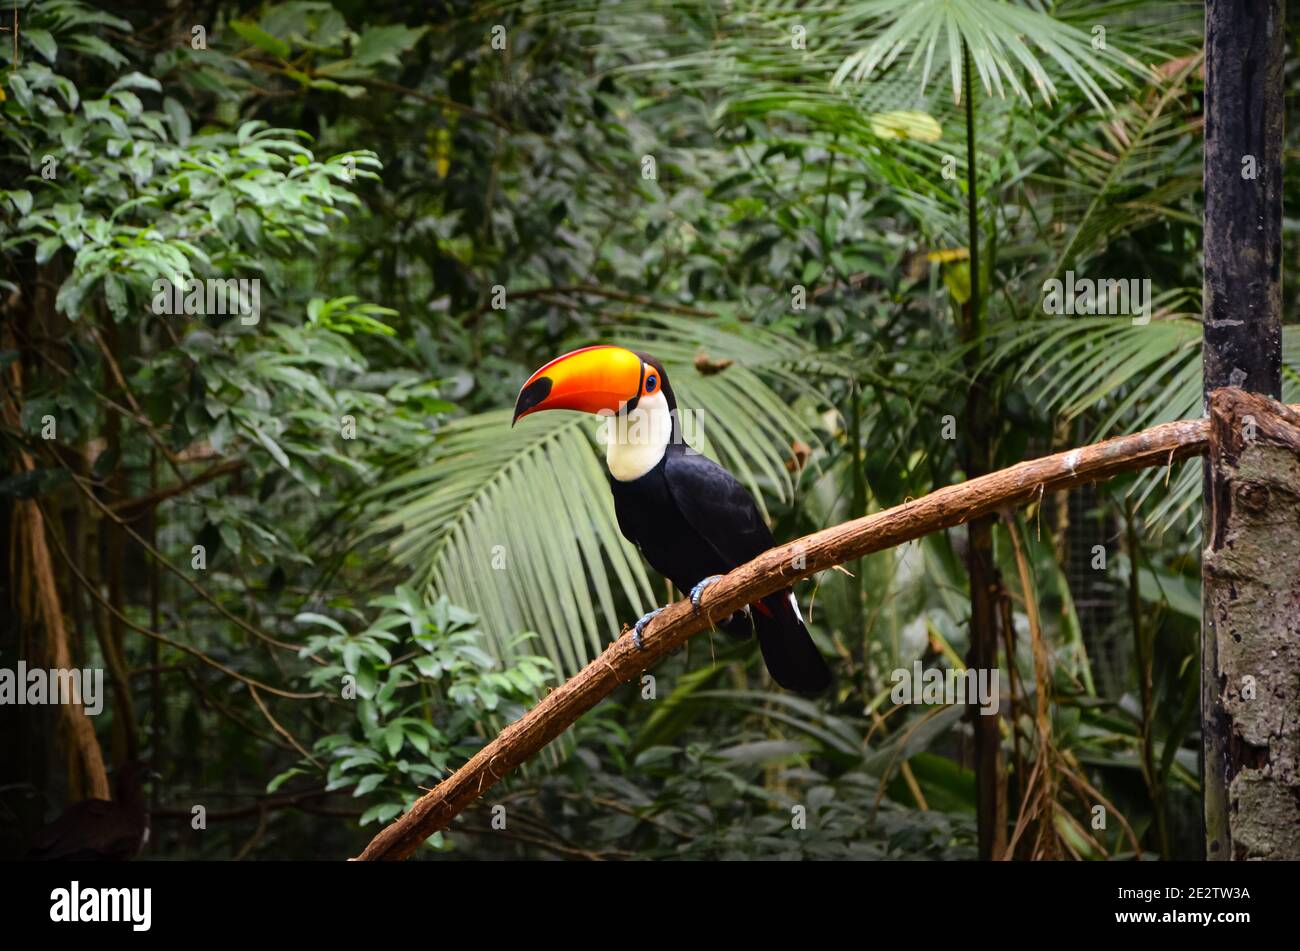 Toco toucan in Parque das Aves, Brazil Stock Photo